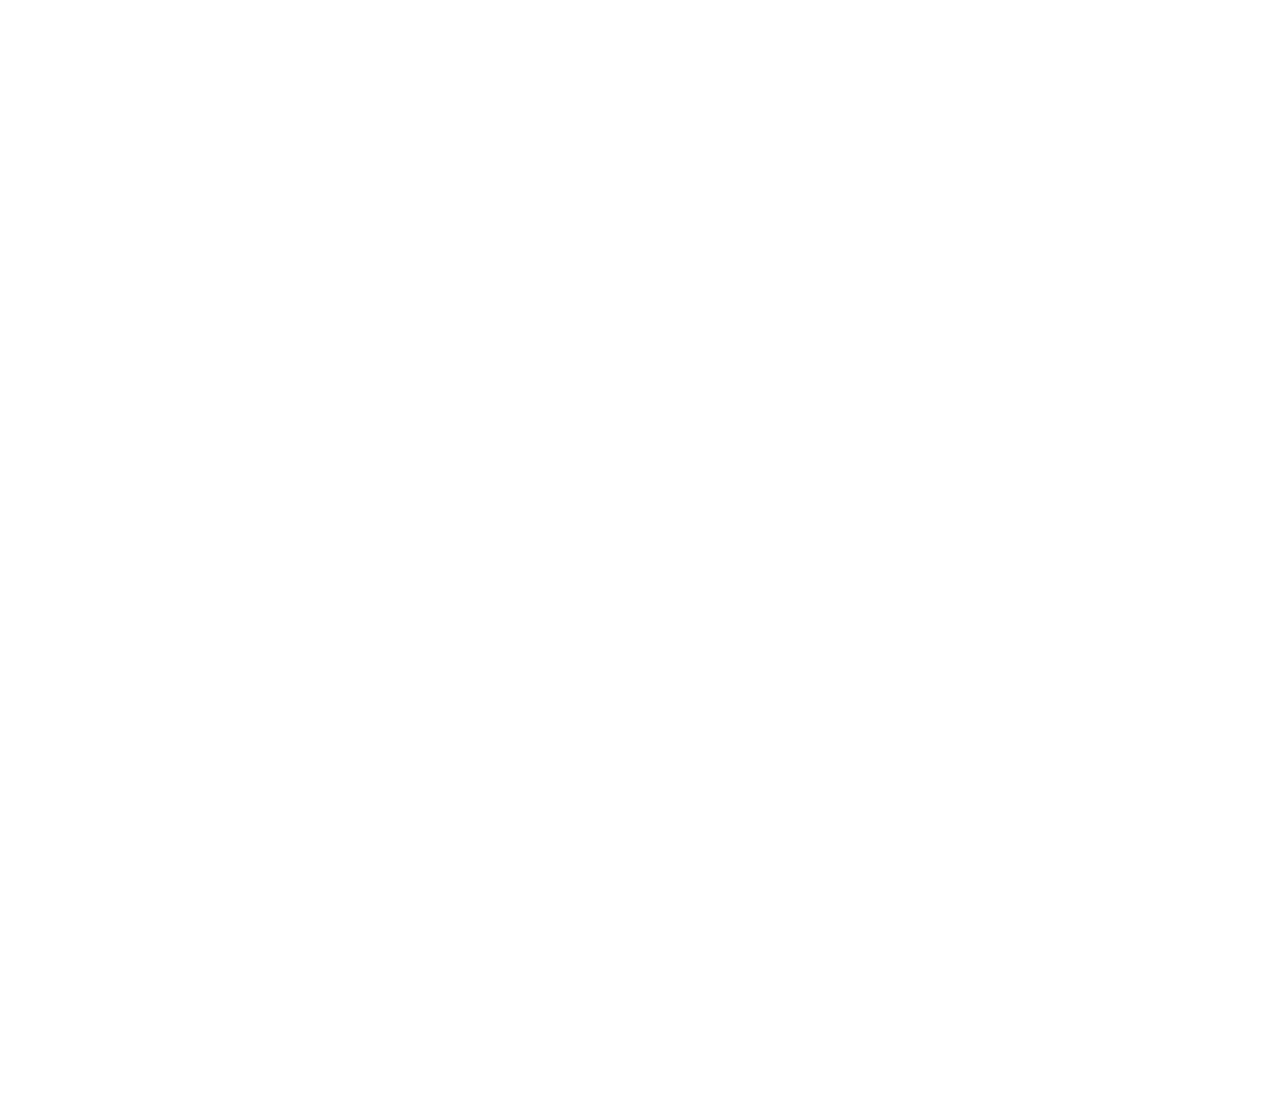 Gamblers Dream